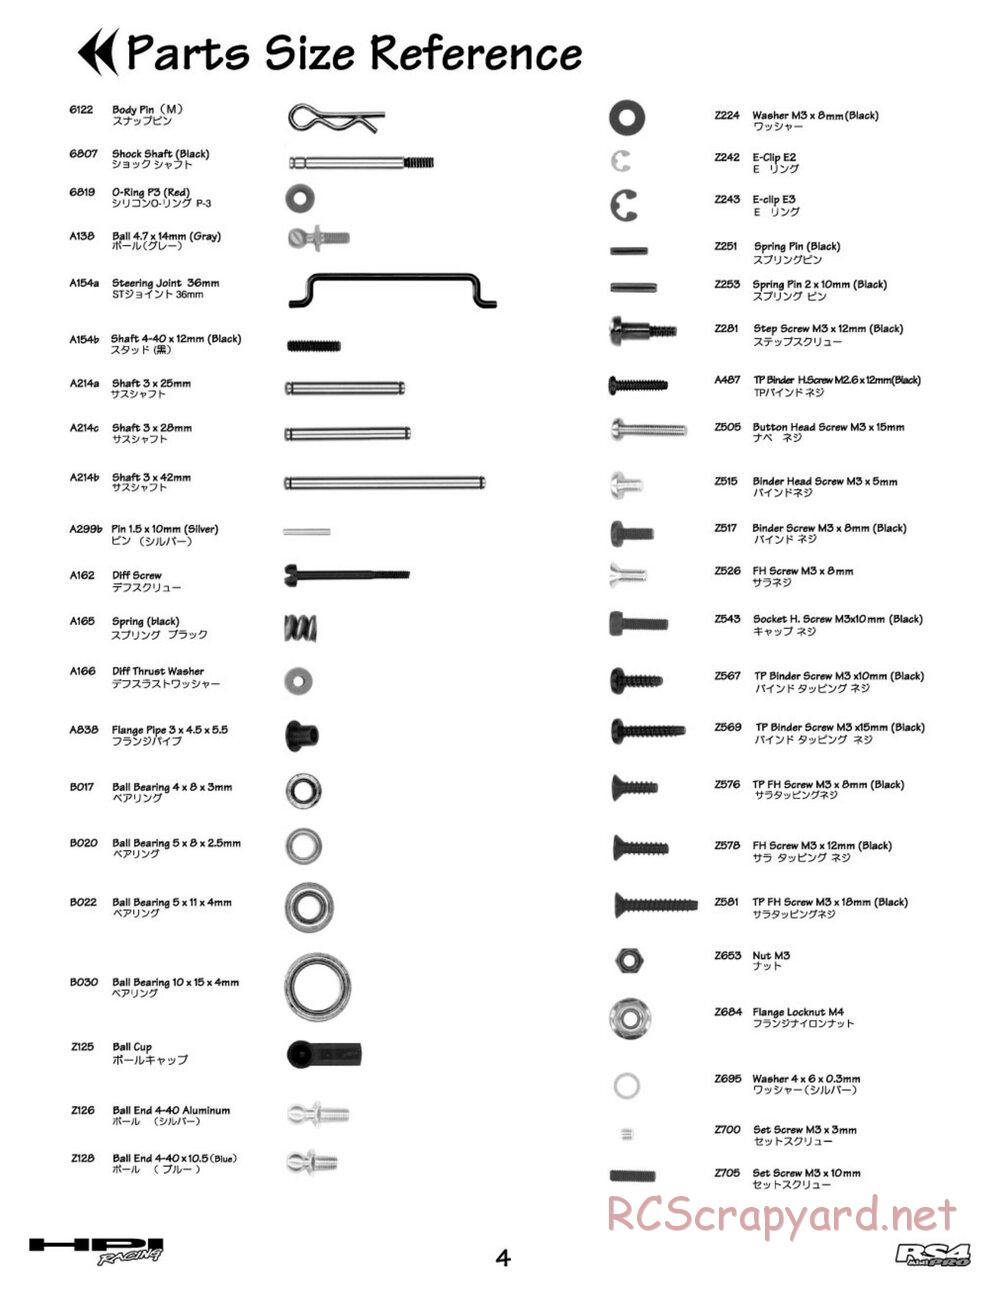 HPI - RS4 Mini Pro - Manual - Page 4